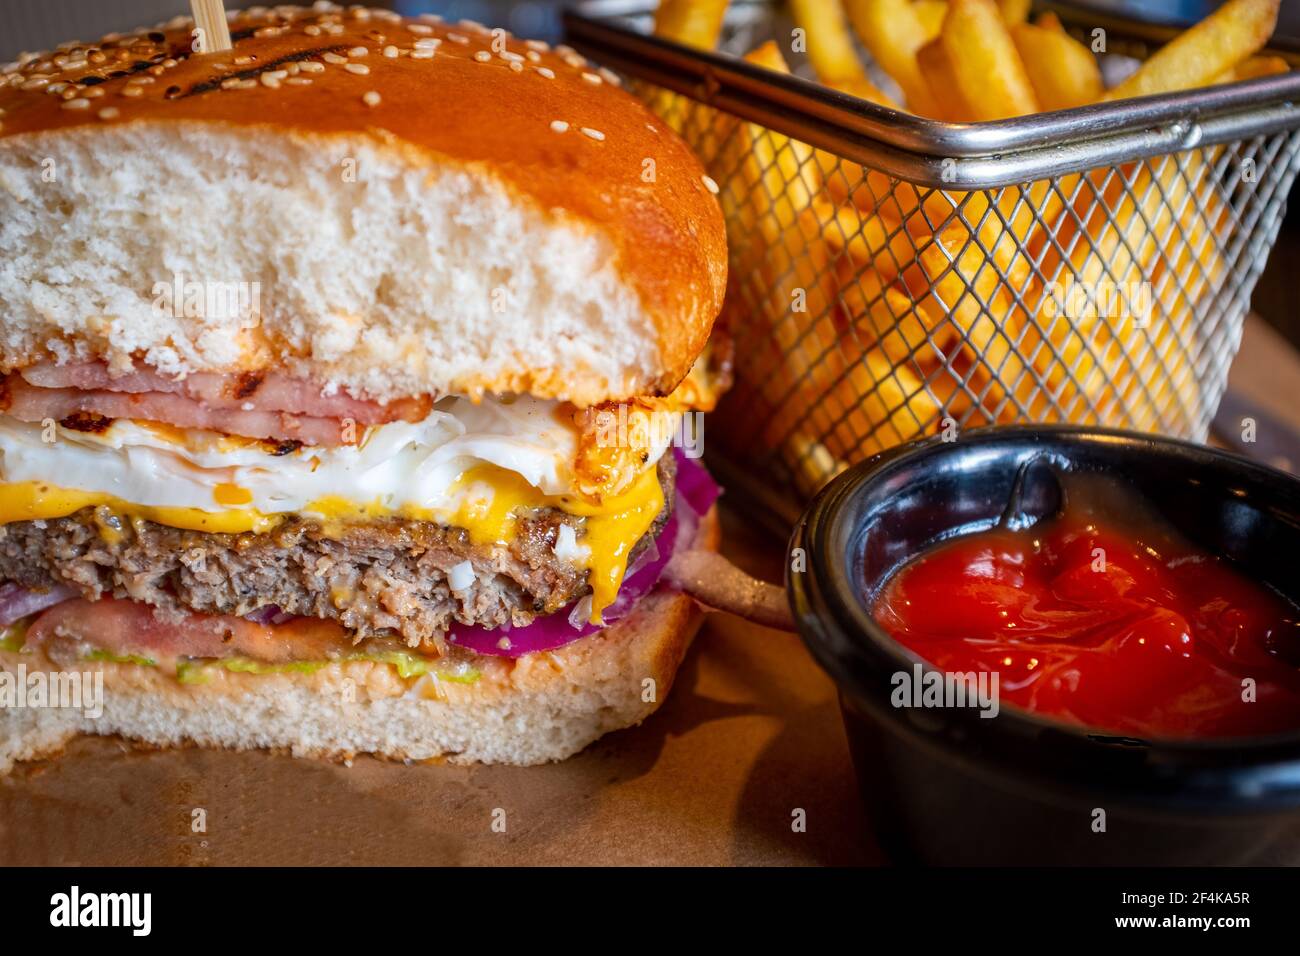 Hamburger de bœuf savoureux fait maison avec œufs, bacon et frites avec sauce tomate Banque D'Images